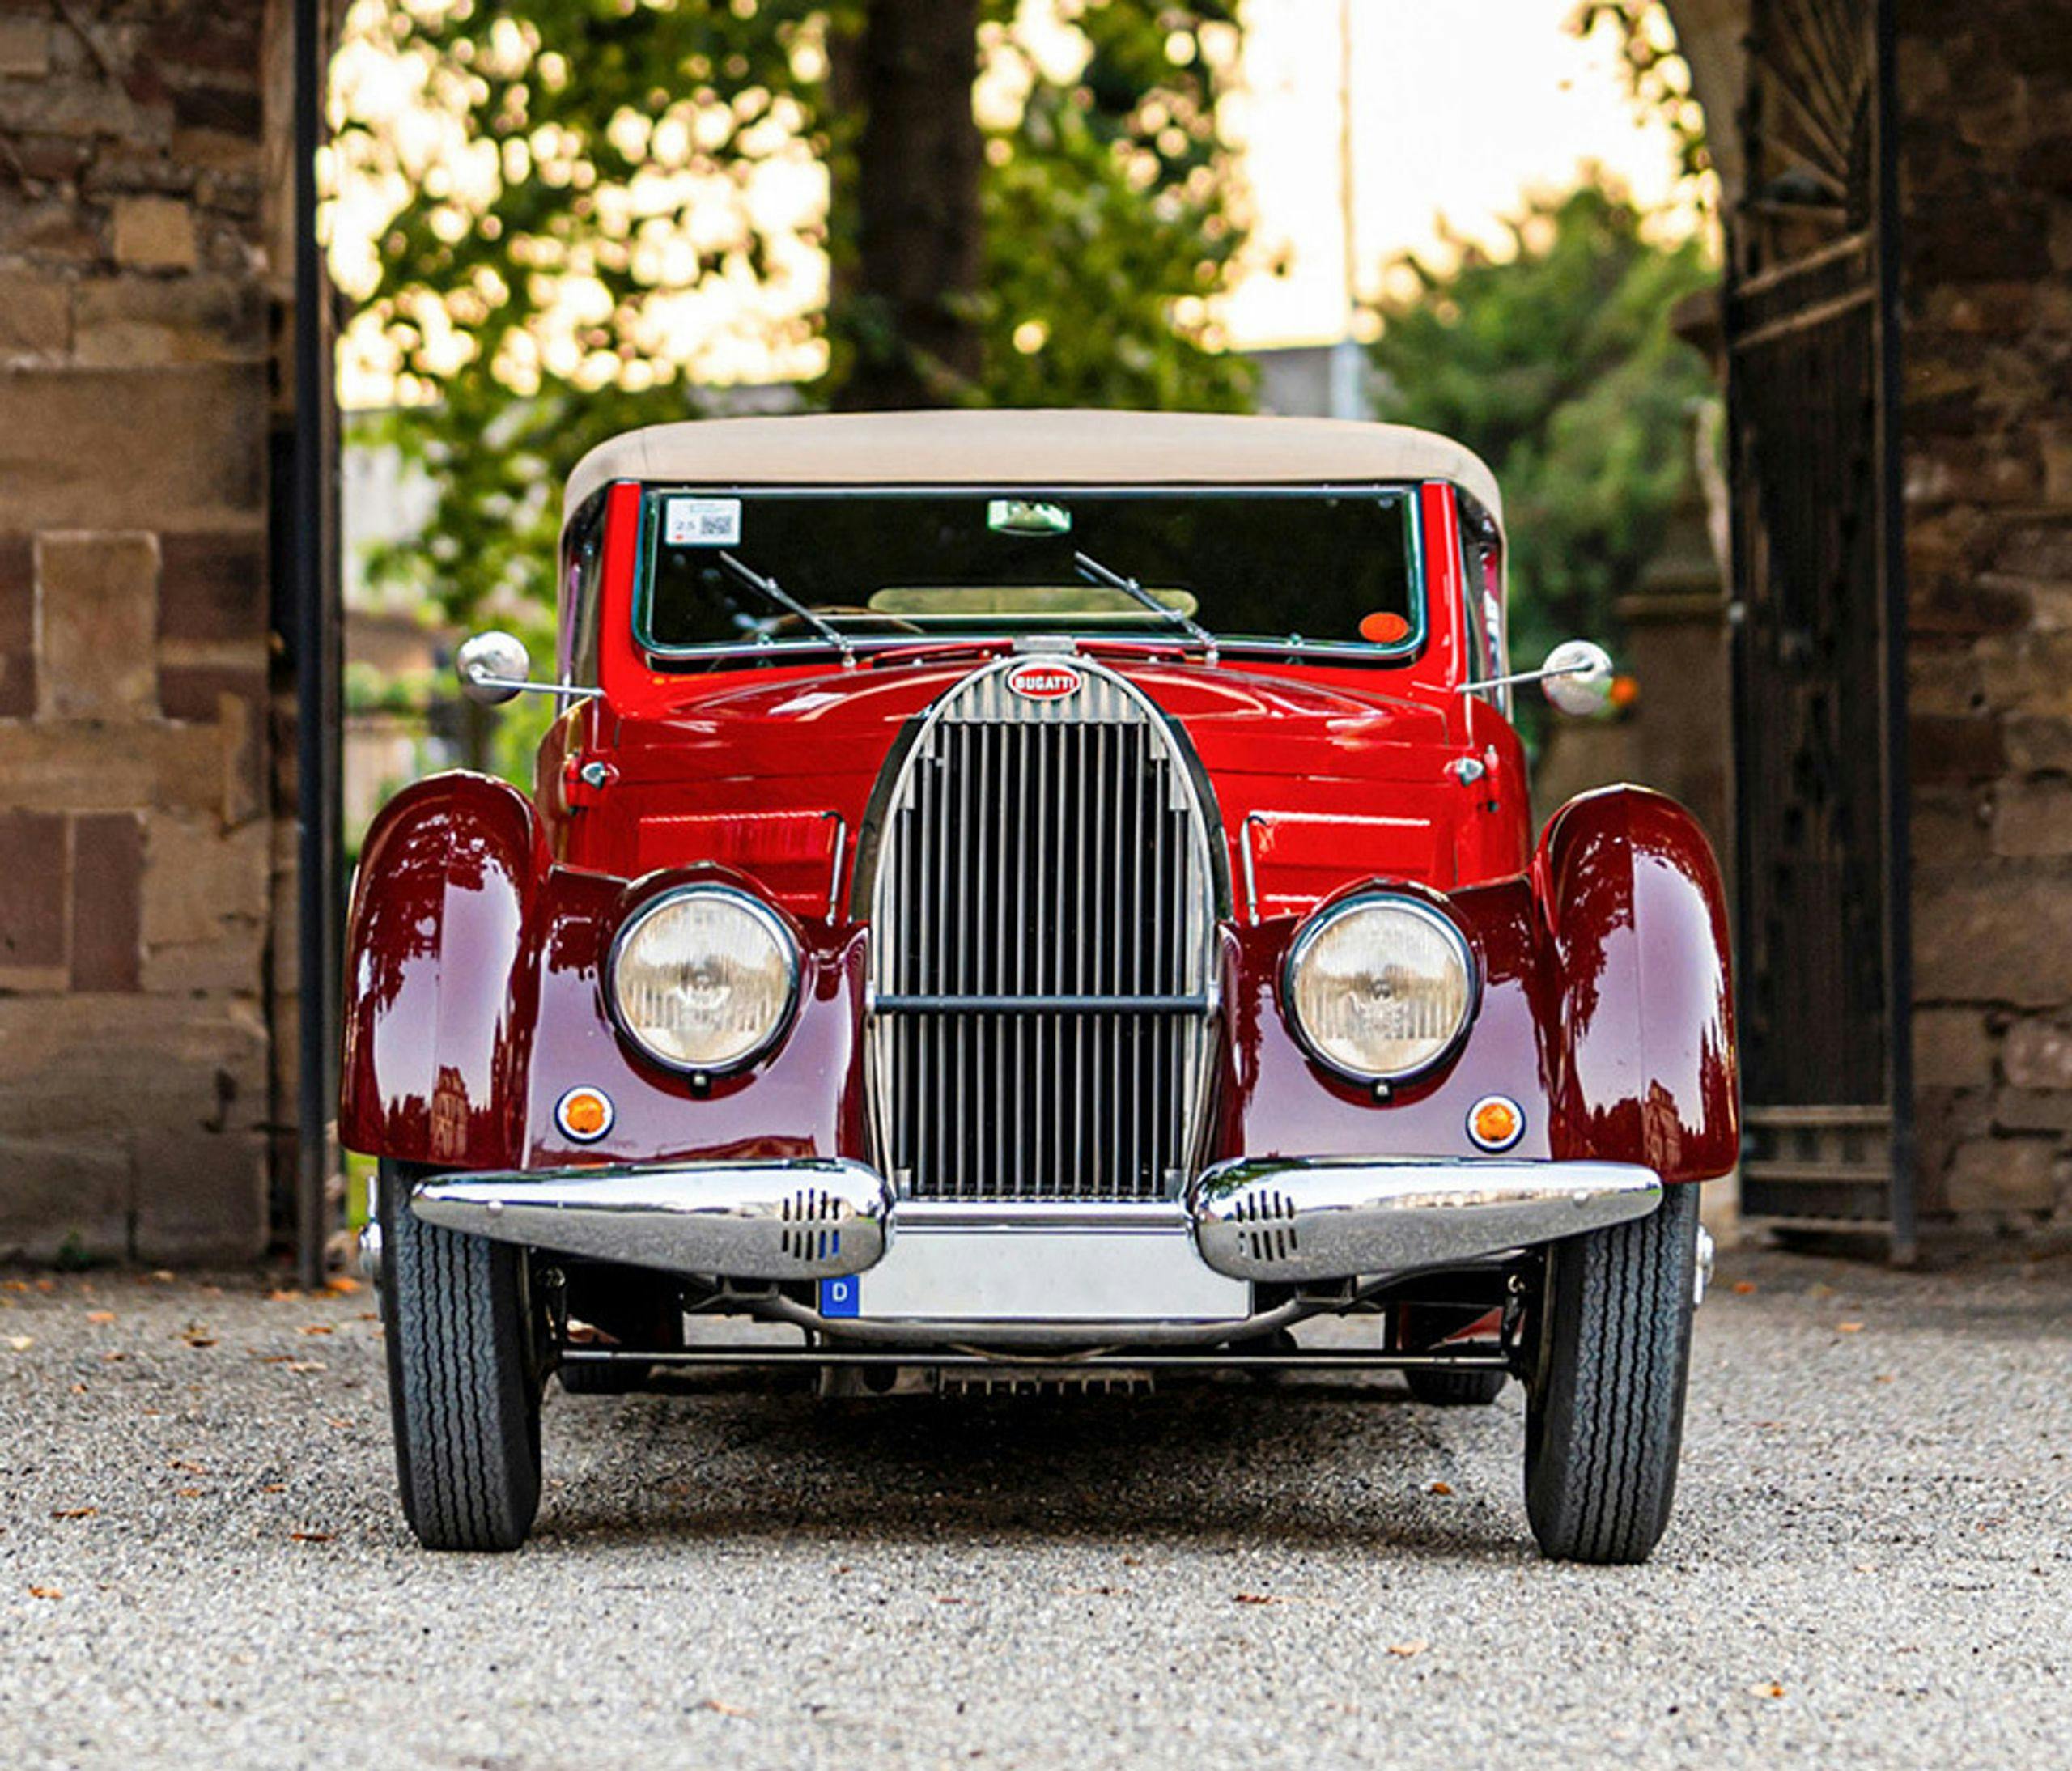 Discover the Bugatti brand story